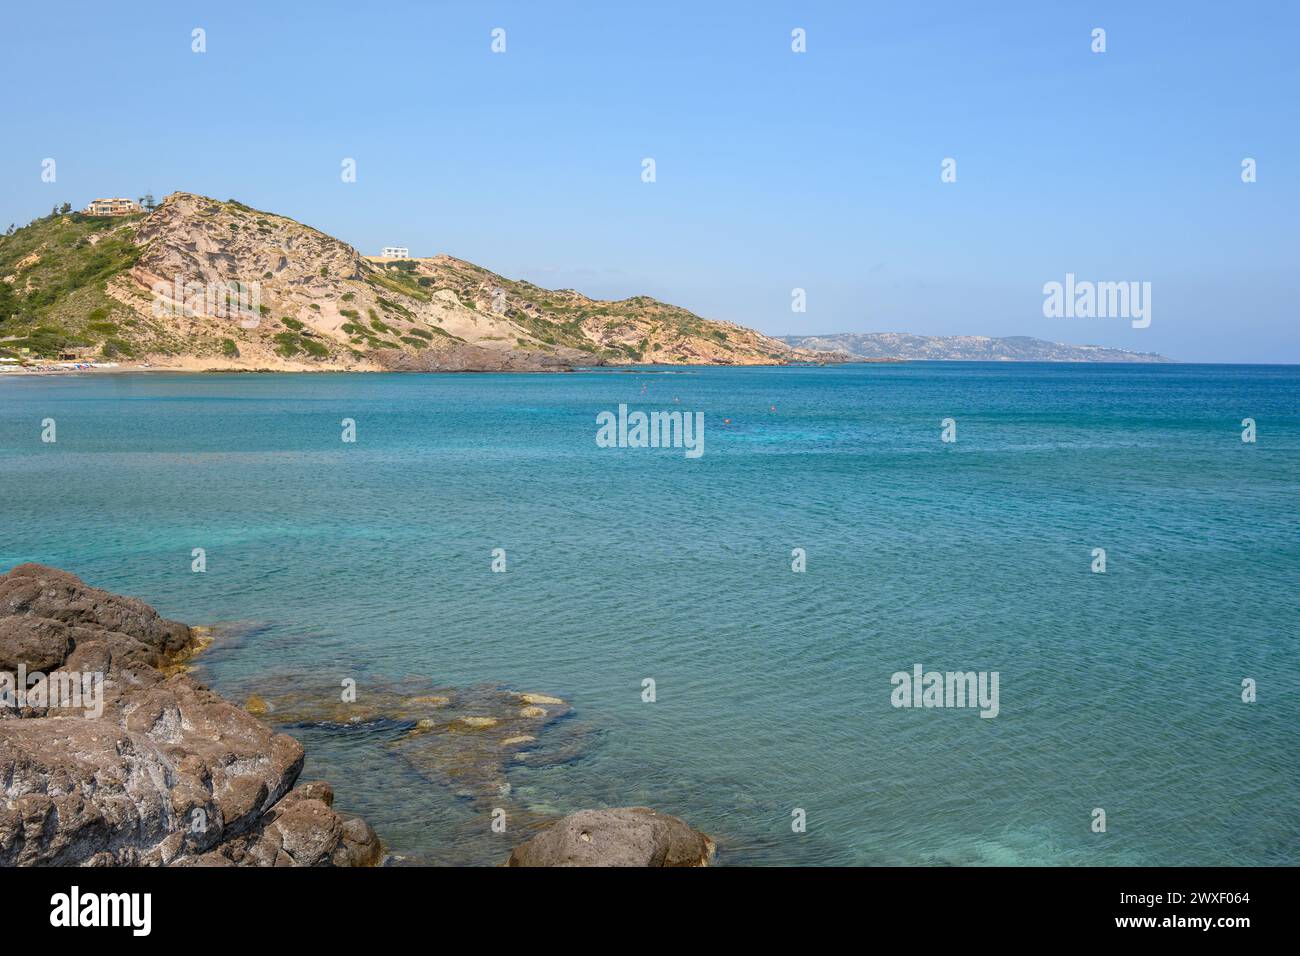 Agios Stefanos bay on the island of Kos. Greece Stock Photo